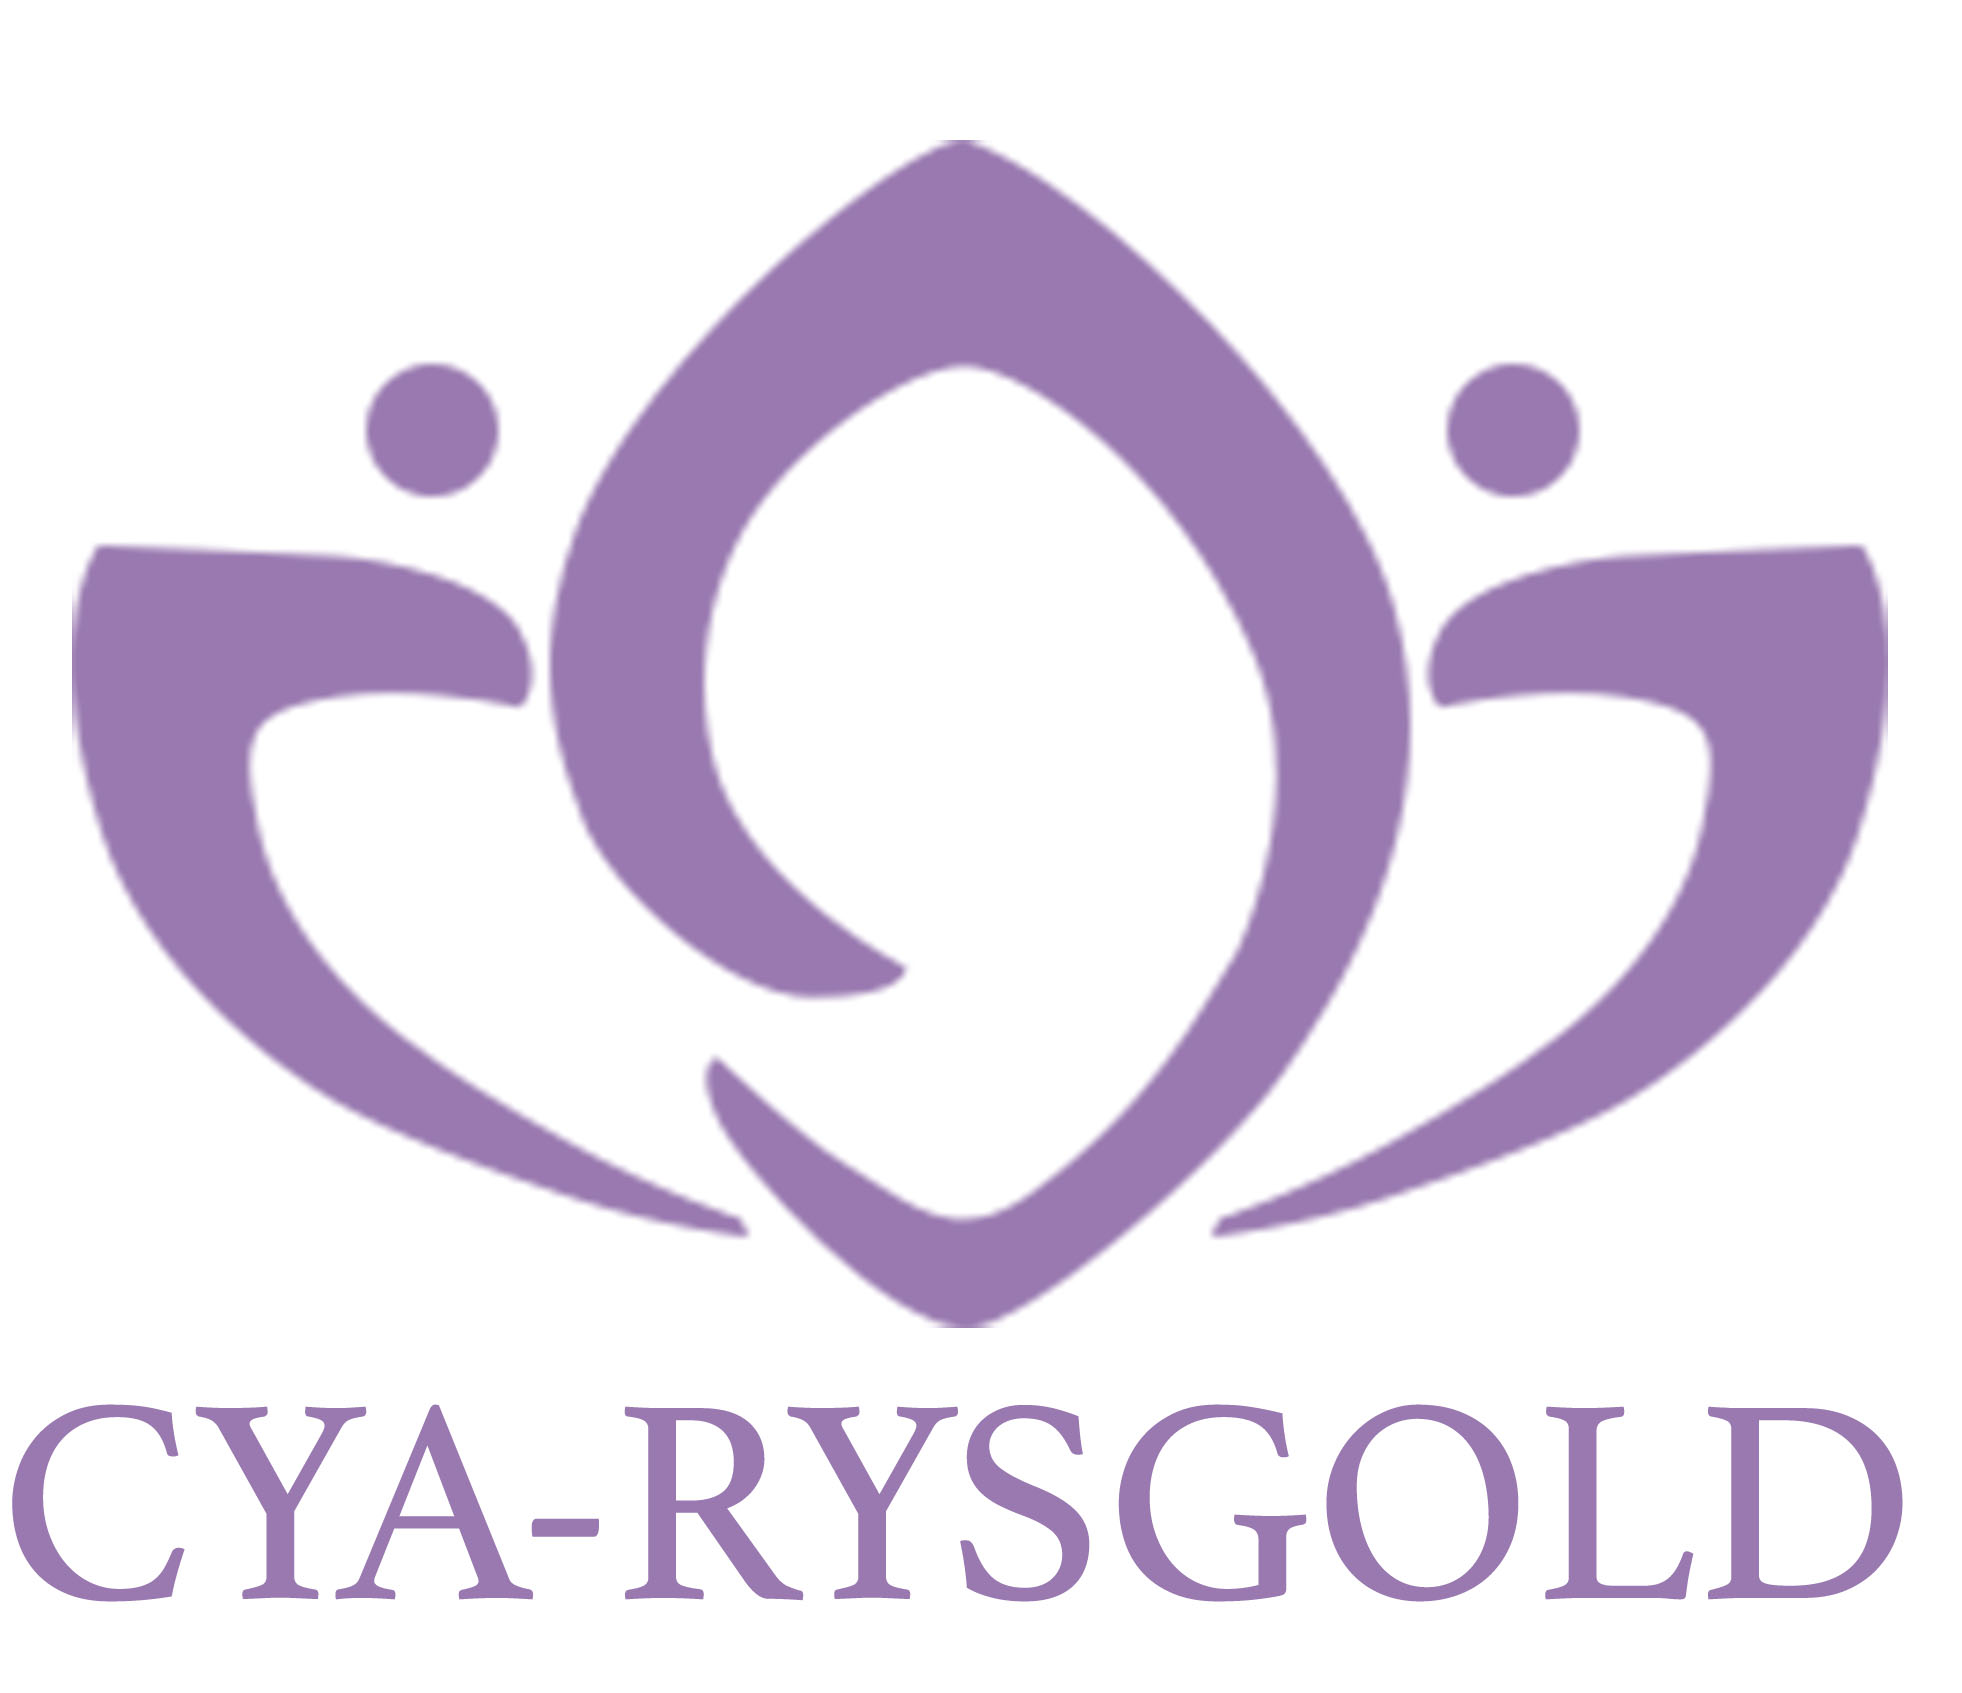 CYA-RYSGOLD